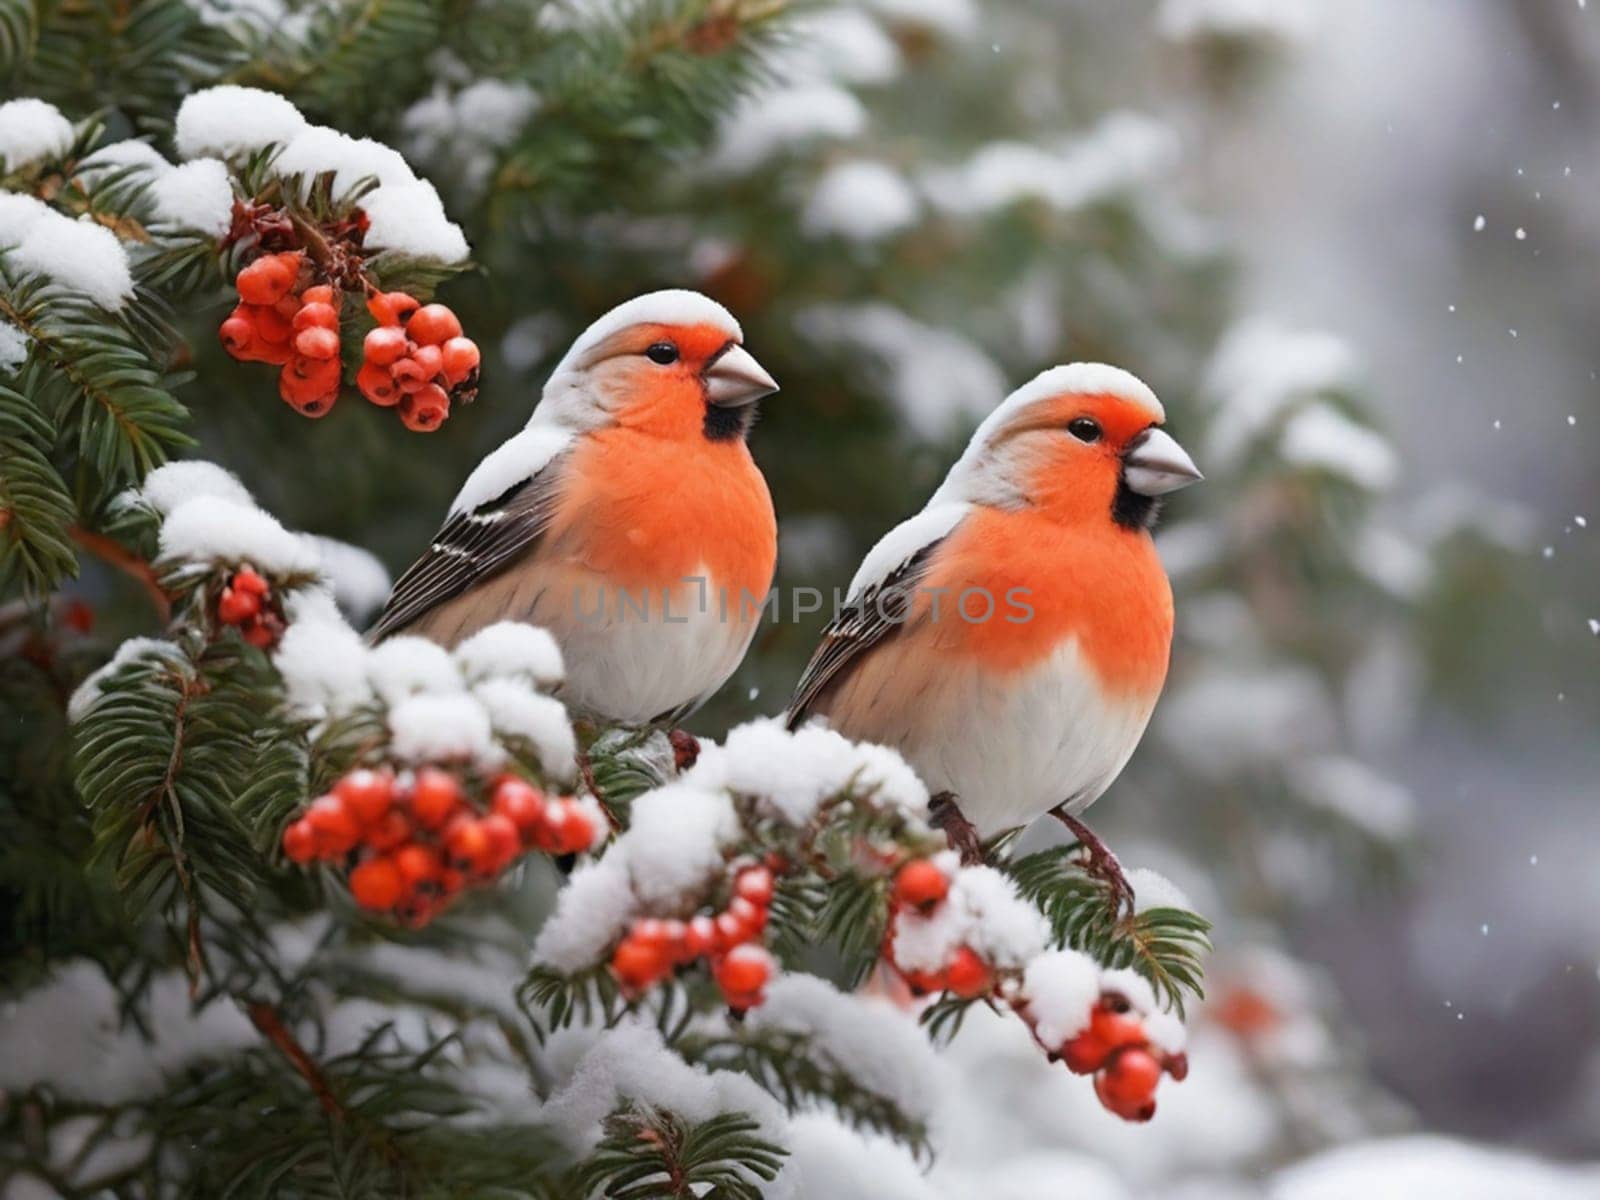 Beautiful bright birds sit on a rowan branch in snowy winter